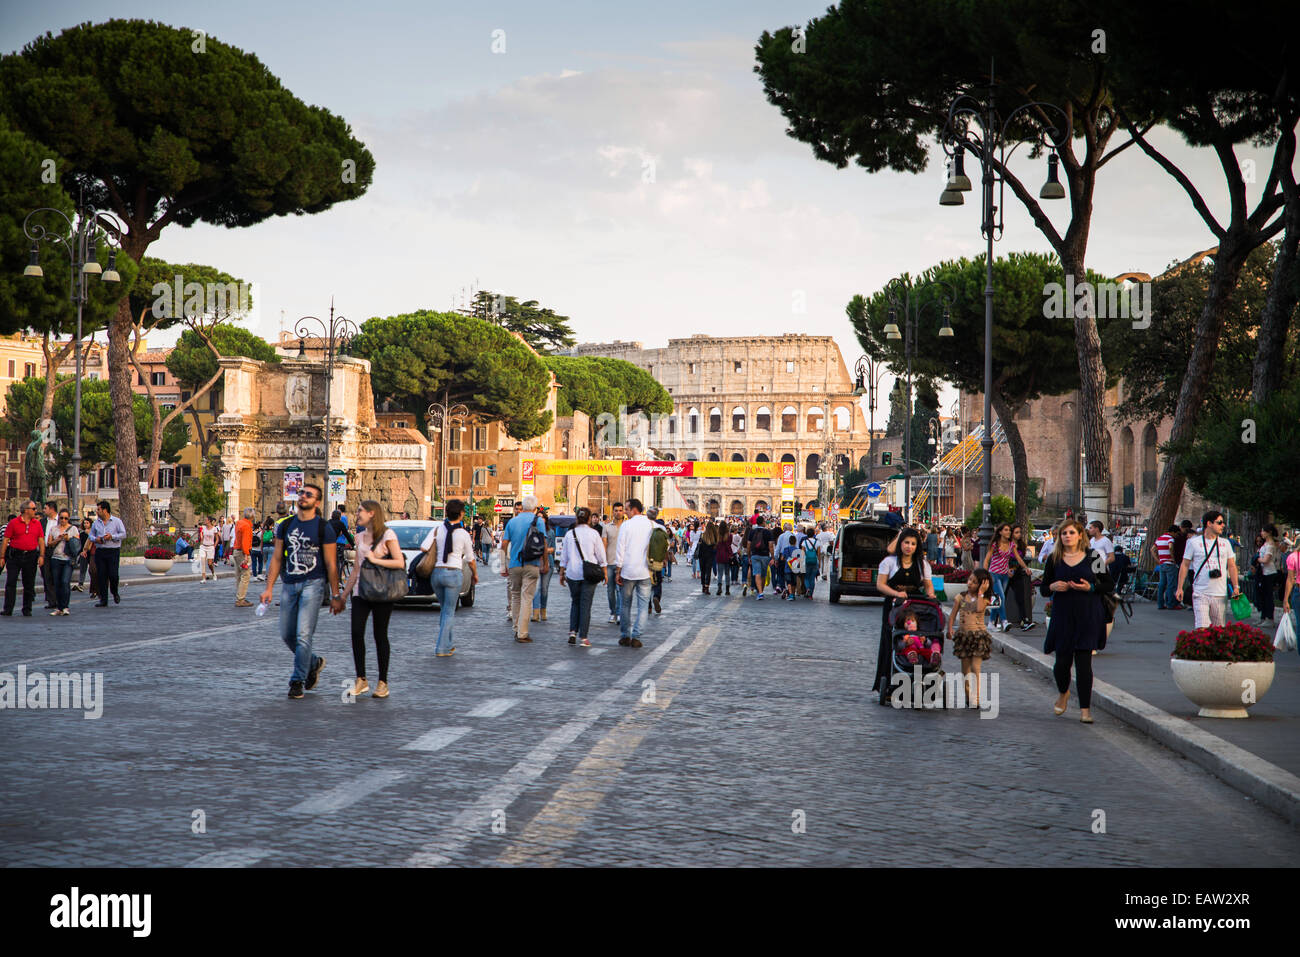 Colosseum, Via dei Fori Imperiali, Rome, Lazio, Italy, Europe Stock Photo